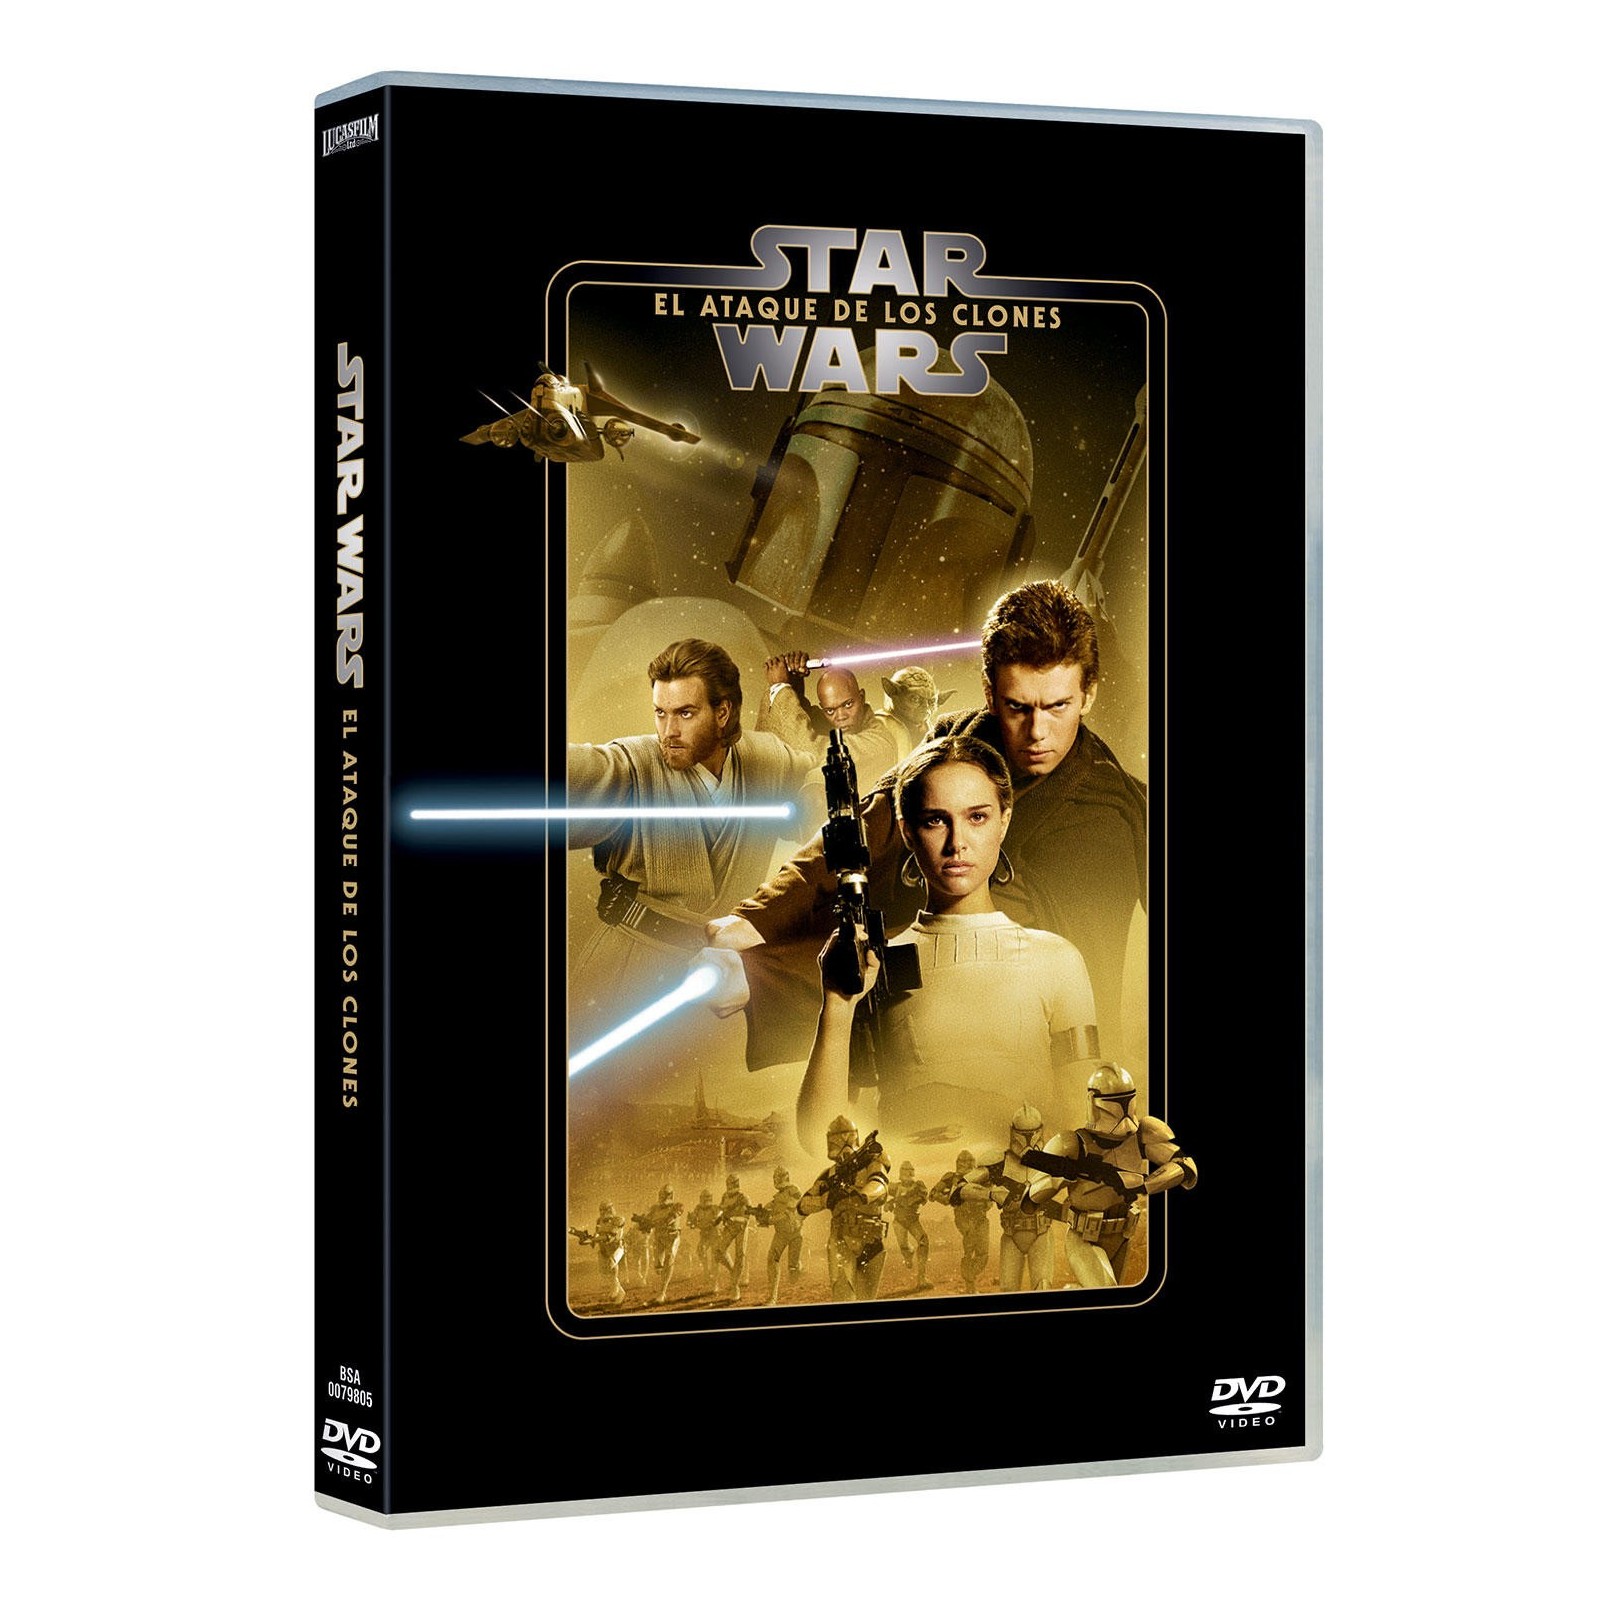 Star Wars Episodio Ii: El Ataque De Los Clones (2020) - Dvd